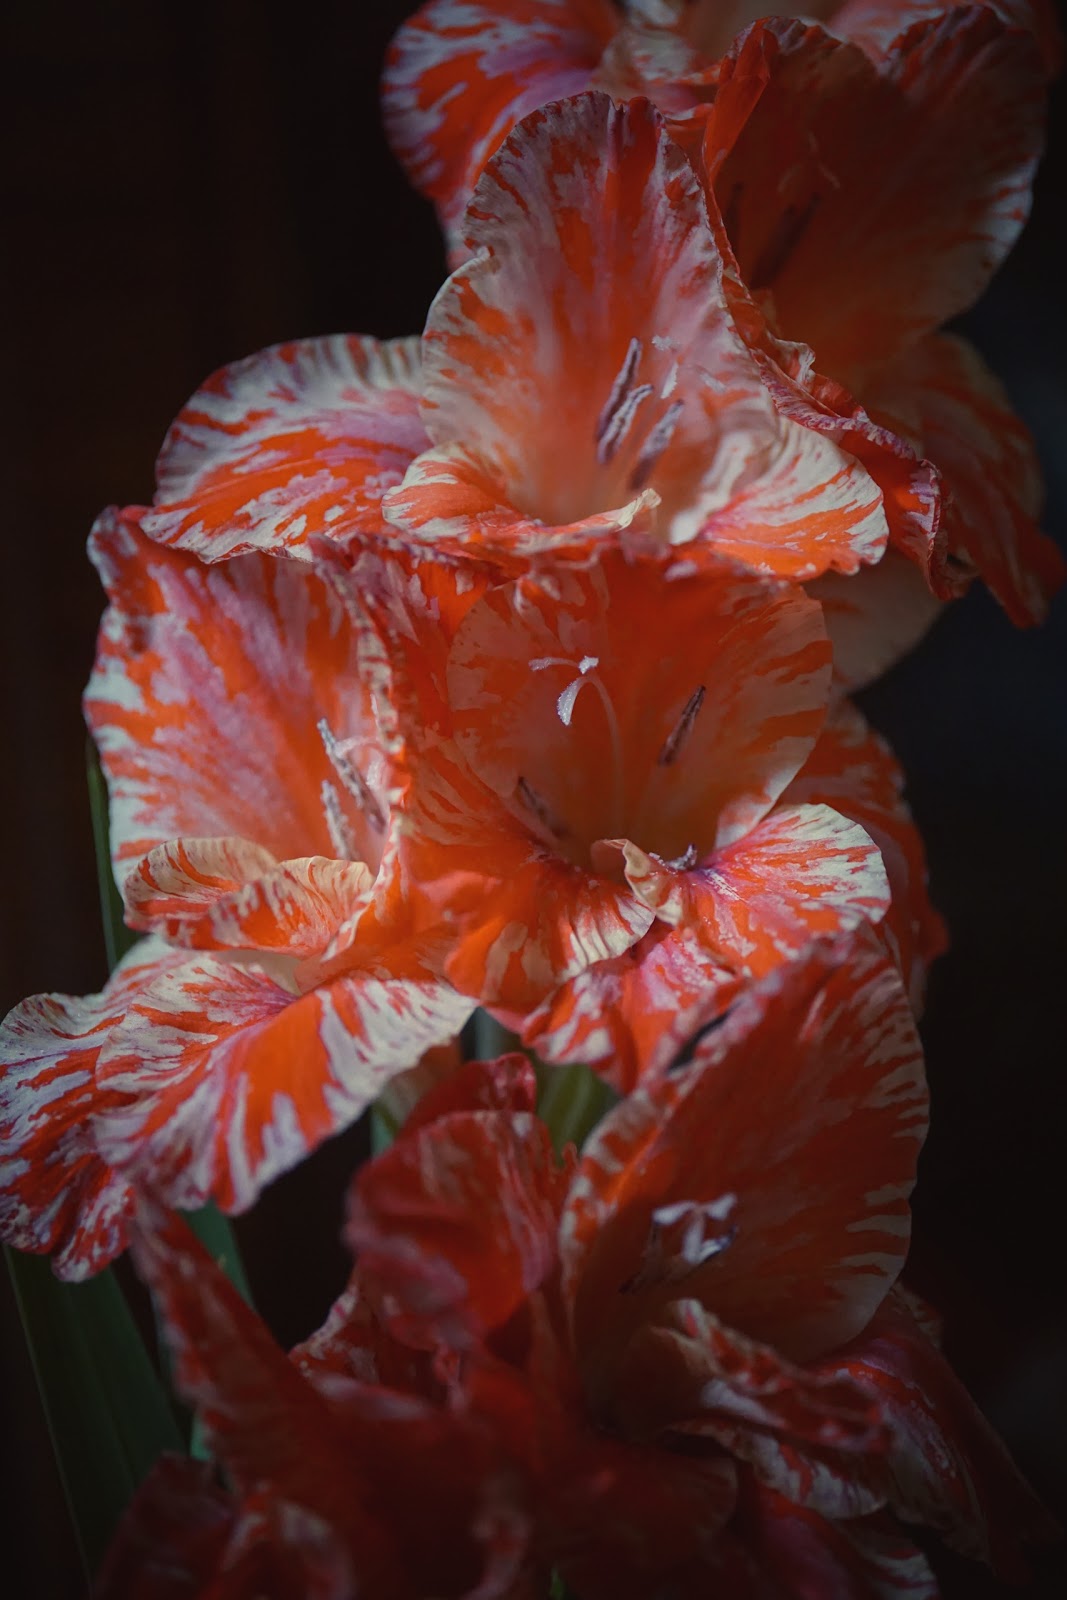 Snapseedでヴィンテージのエフェクトをかけた赤と白のまだら模様の花の写真